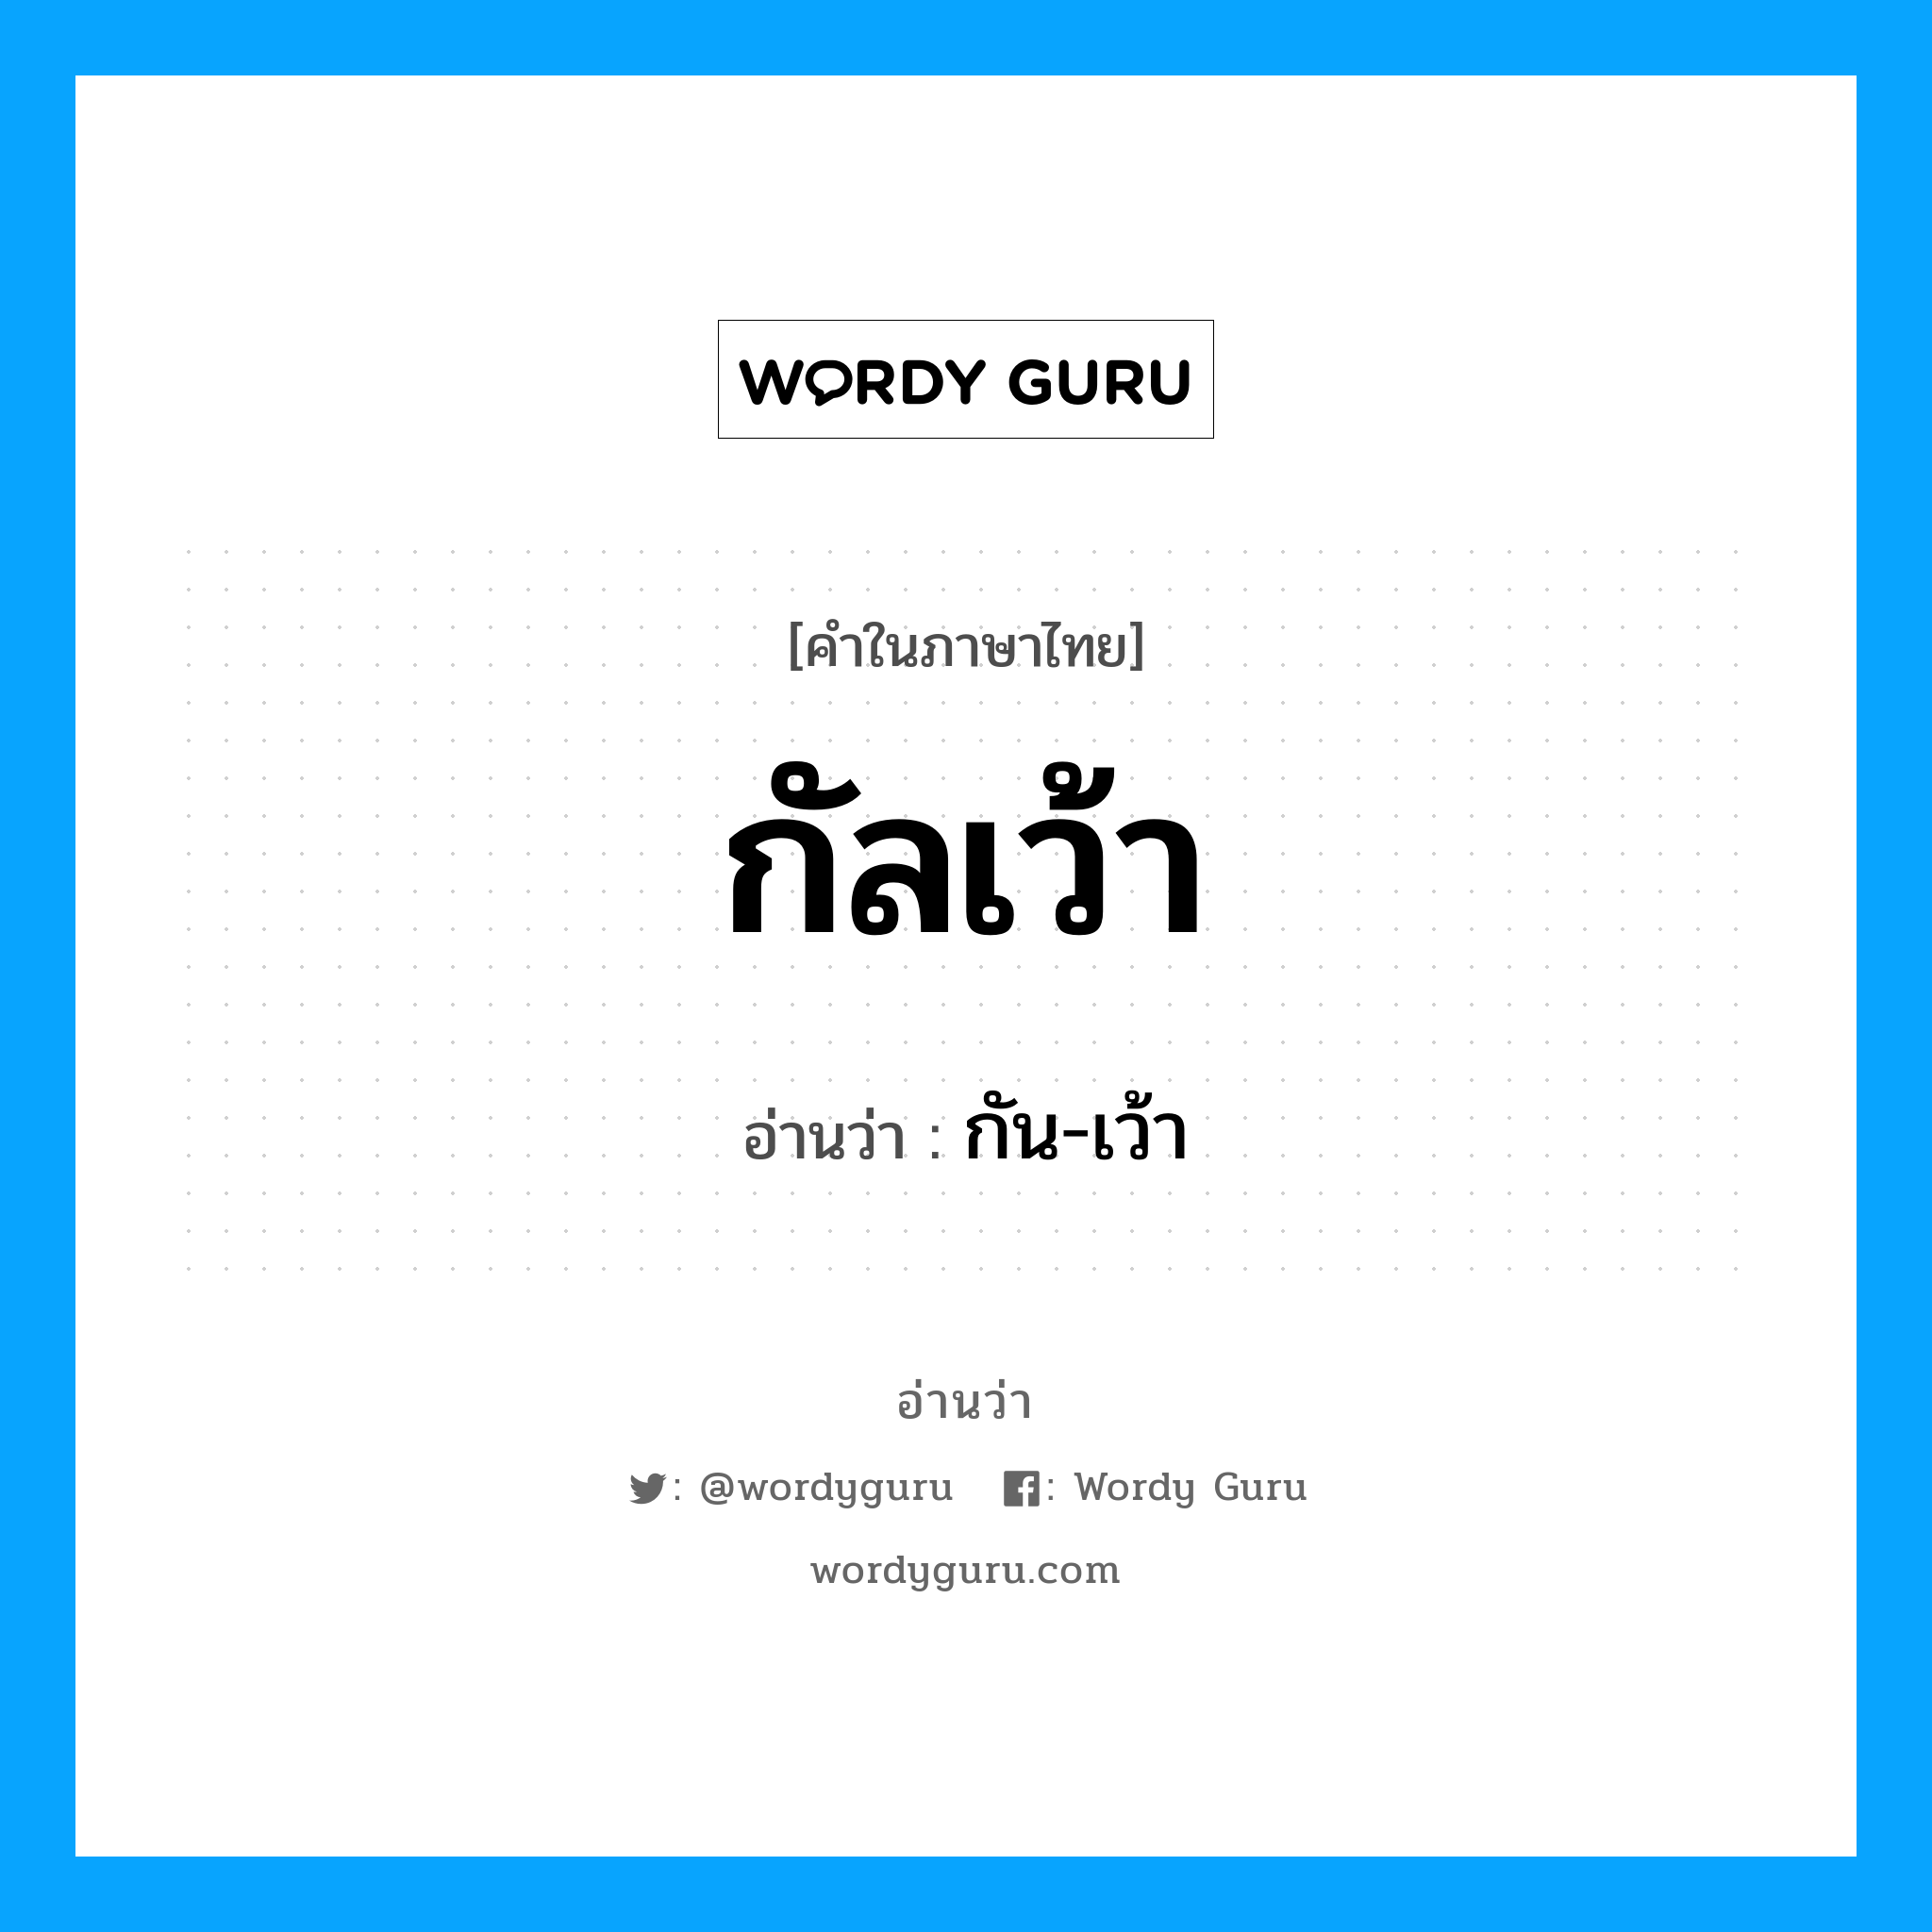 กัน-เว้า เป็นคำอ่านของคำไหน?, คำในภาษาไทย กัน-เว้า อ่านว่า กัลเว้า